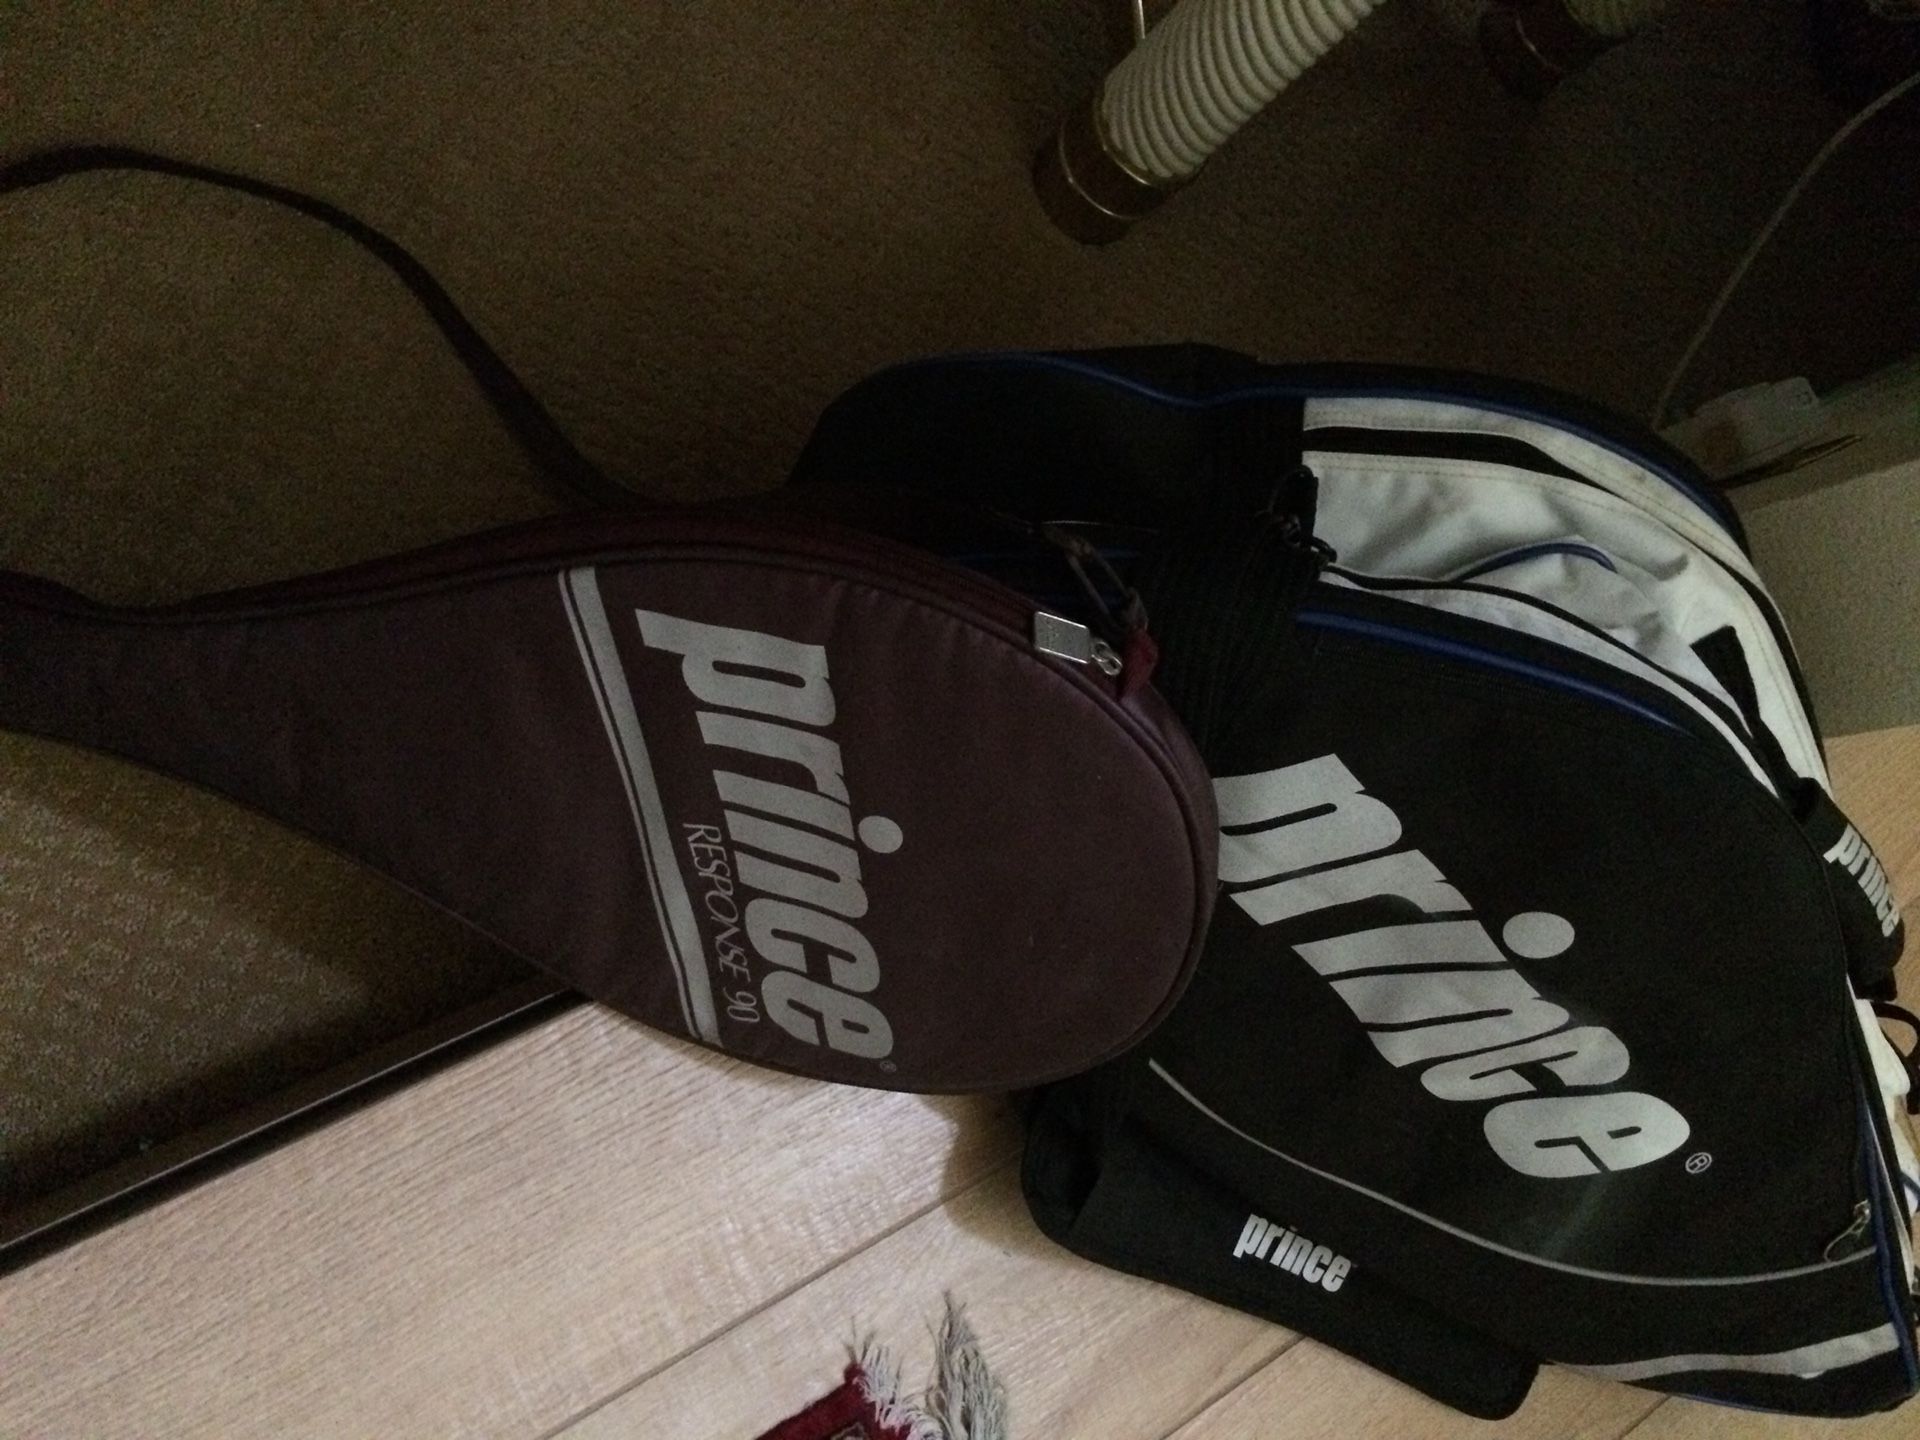 Large tennis bag